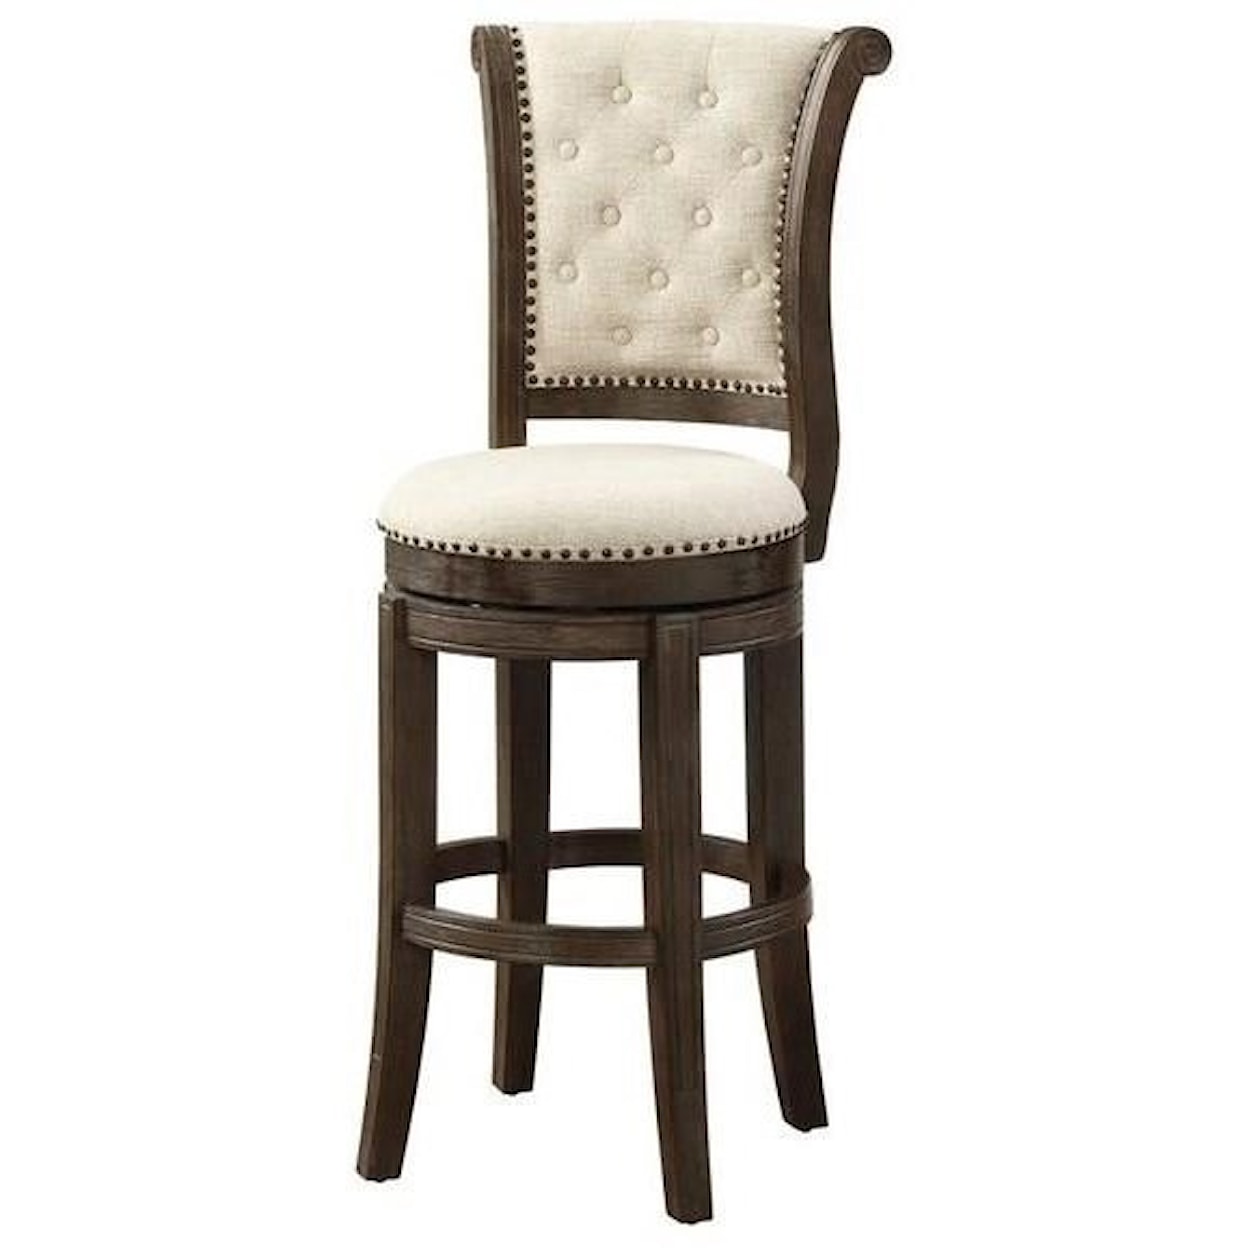 Acme Furniture Glison Bar Chair